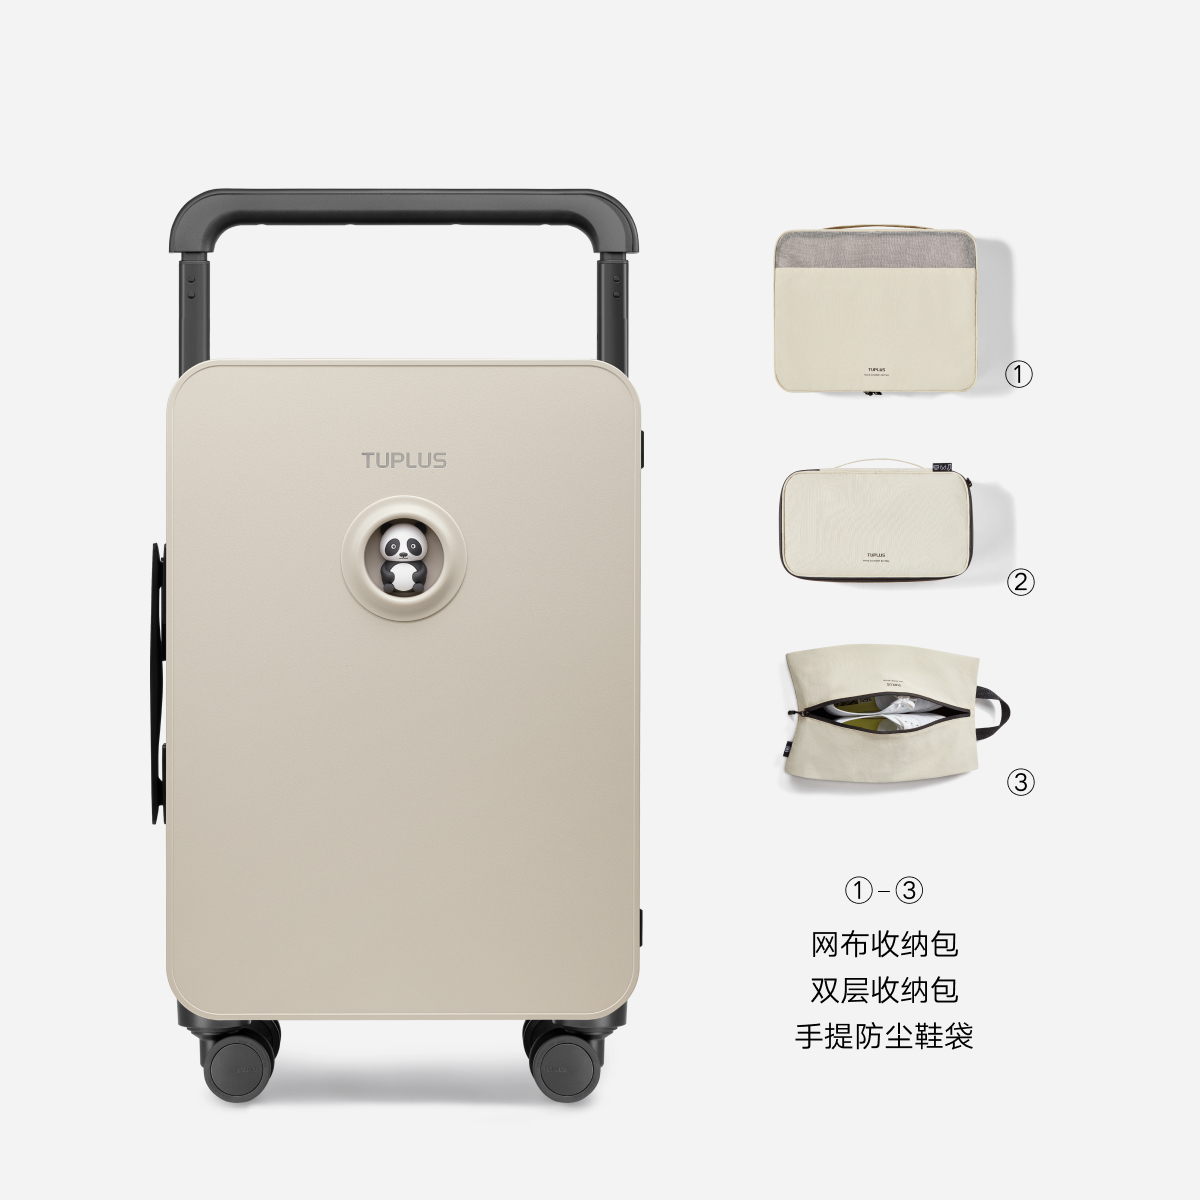 新款TUPLUS途加动物地图中置宽拉杆行李箱20寸24寸公仔箱DIY版